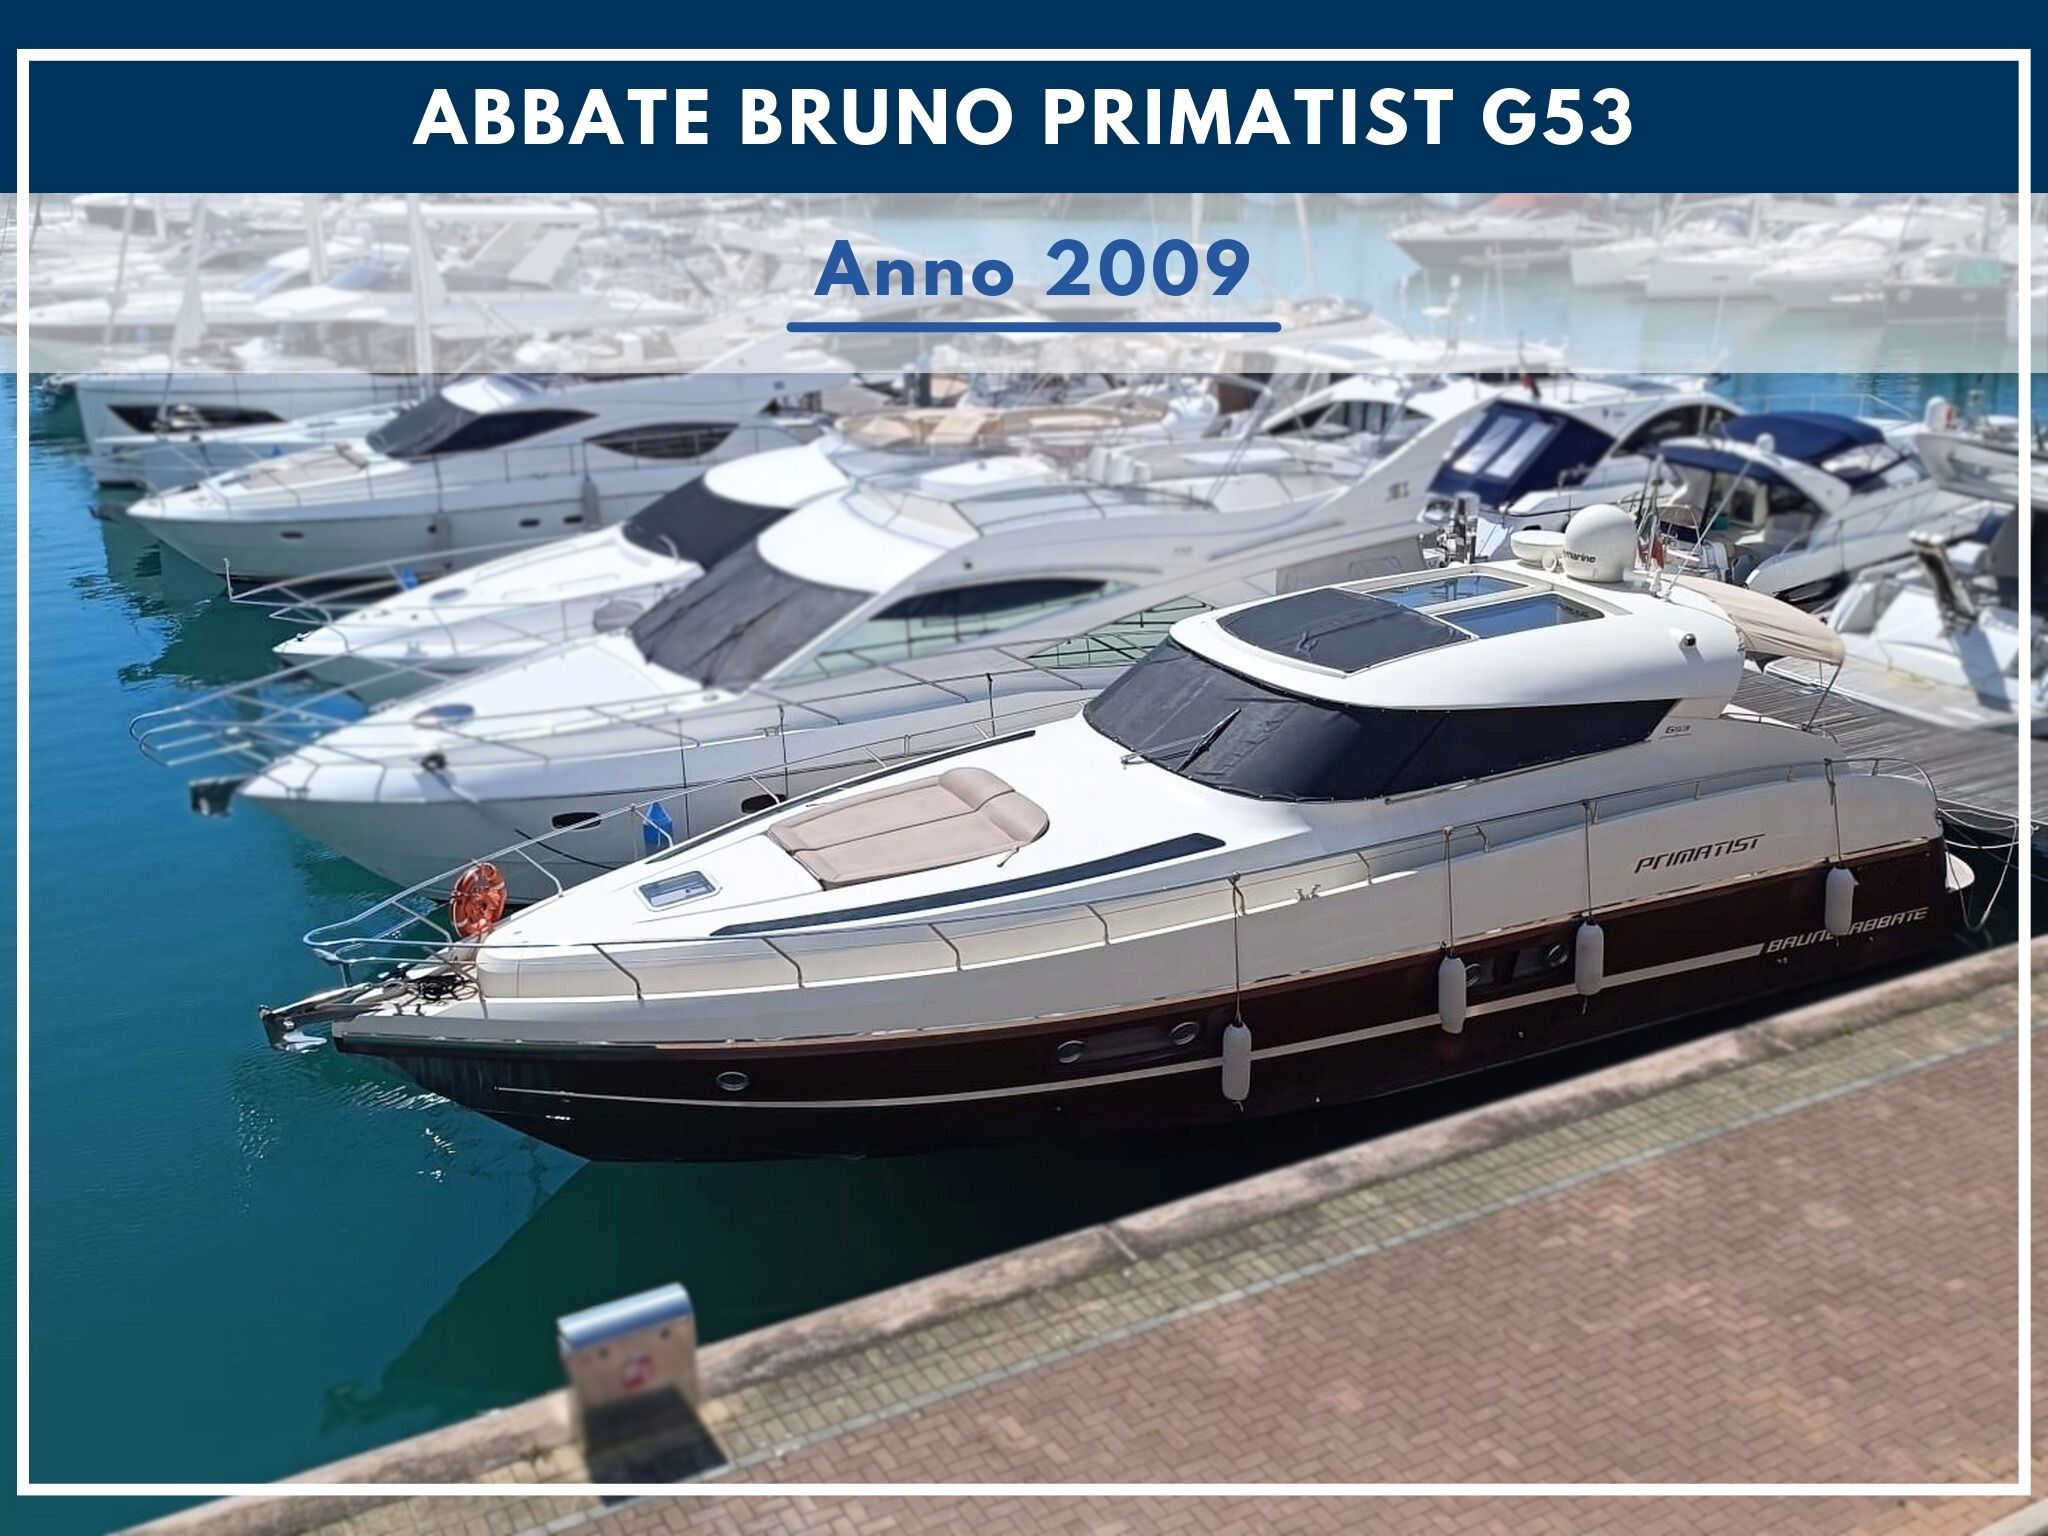 Nuovo Arrivo: Abbate Bruno Primatist G53